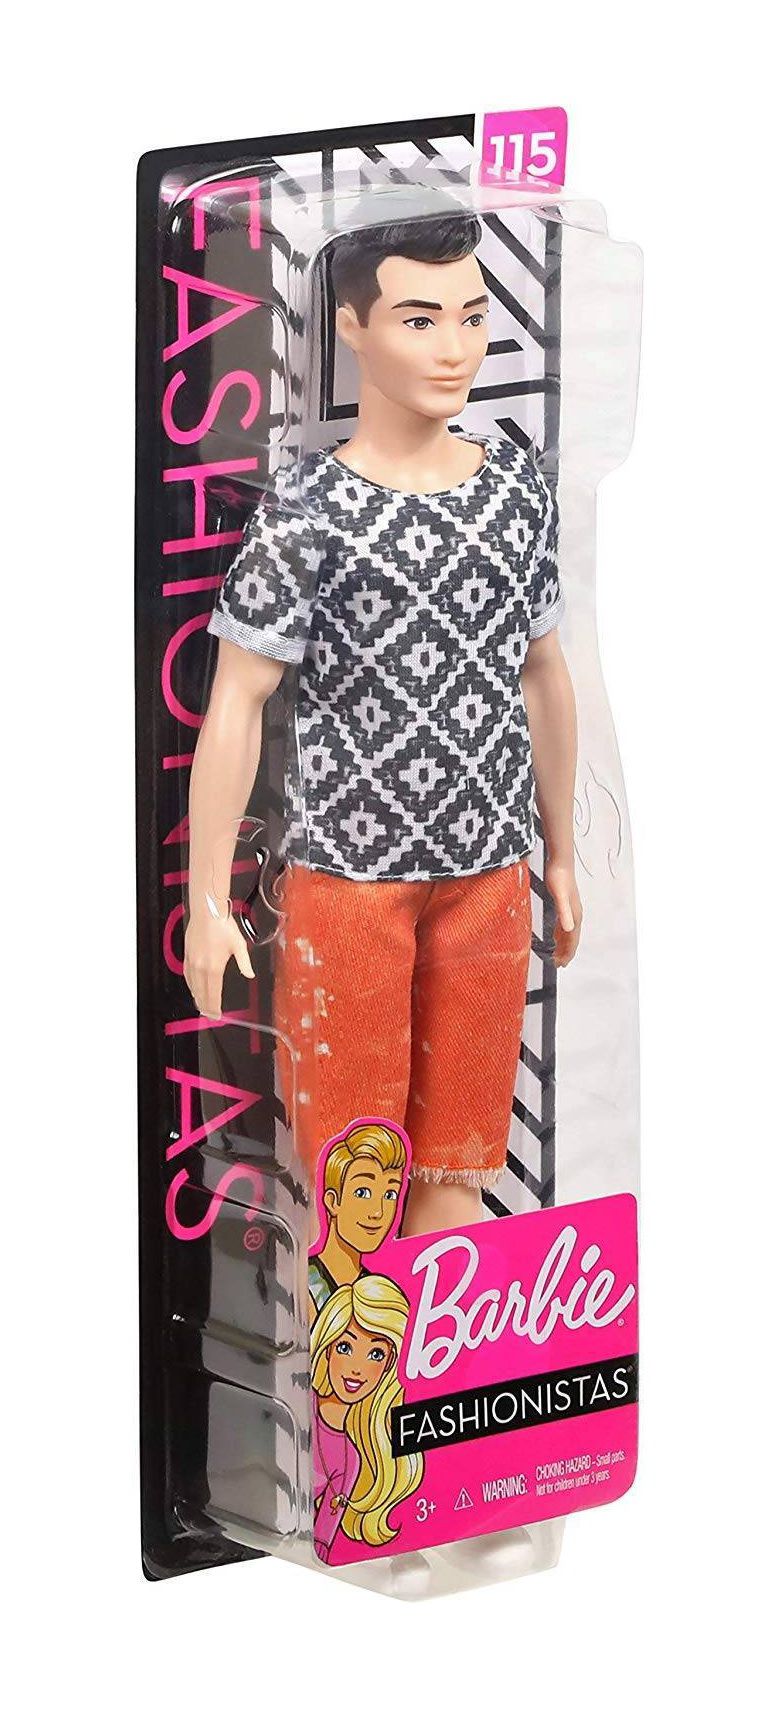 Boneco Ken Fashionistas - Mattel